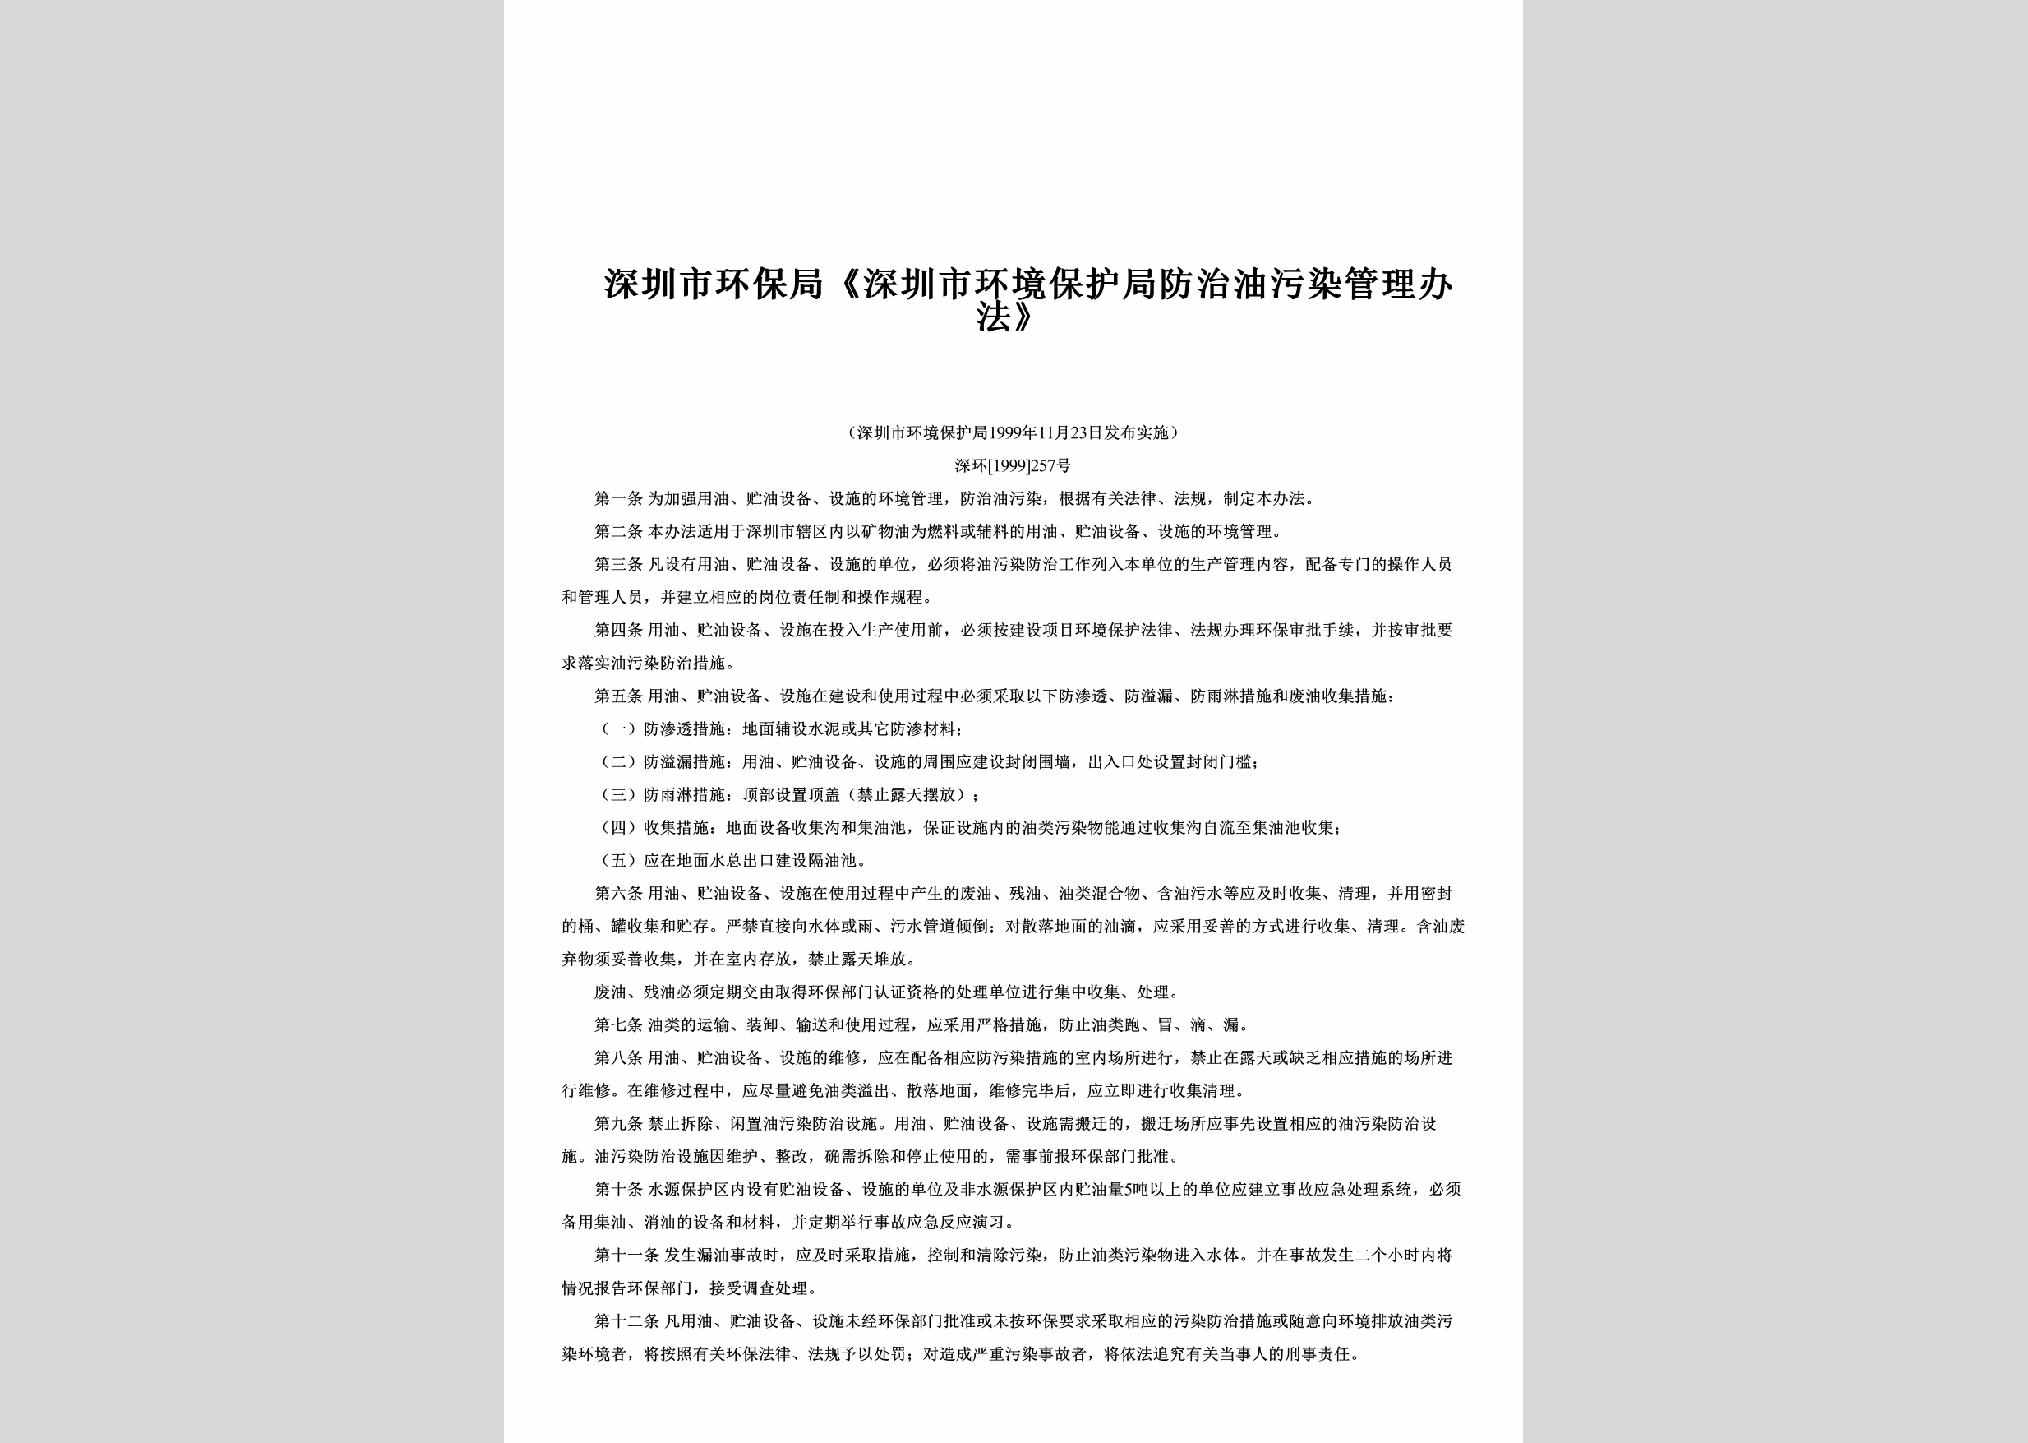 深环[1999]257号：《深圳市环境保护局防治油污染管理办法》